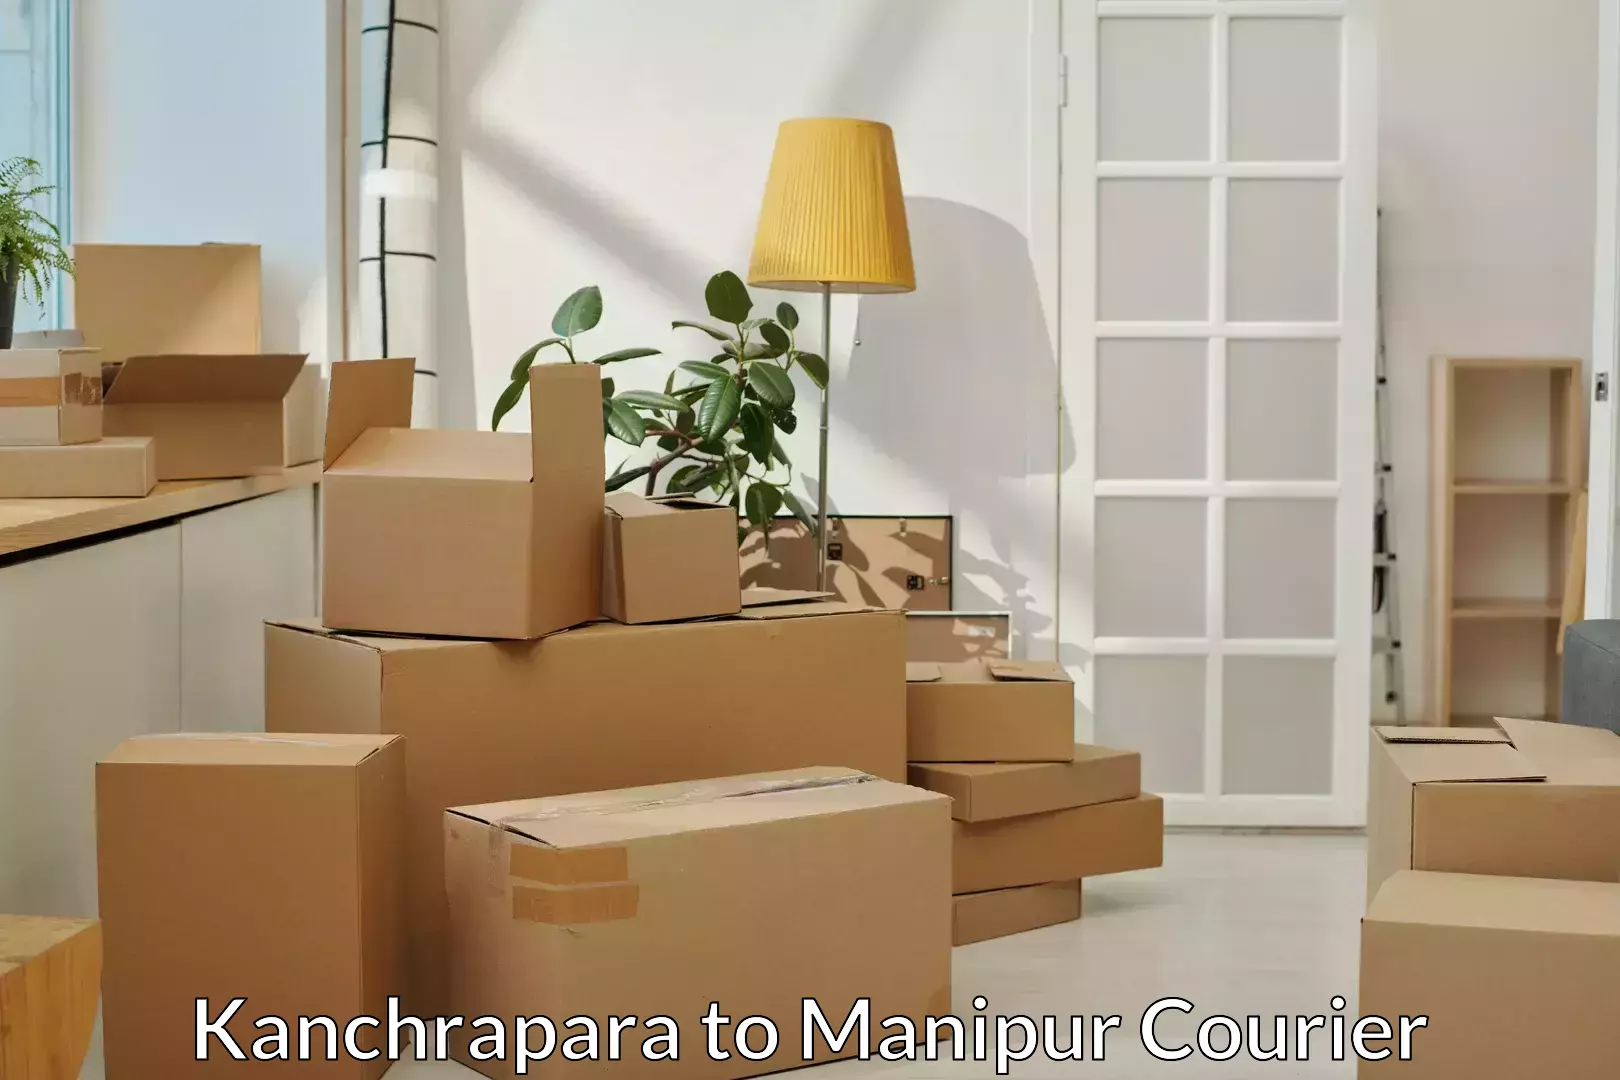 Professional moving company Kanchrapara to Senapati